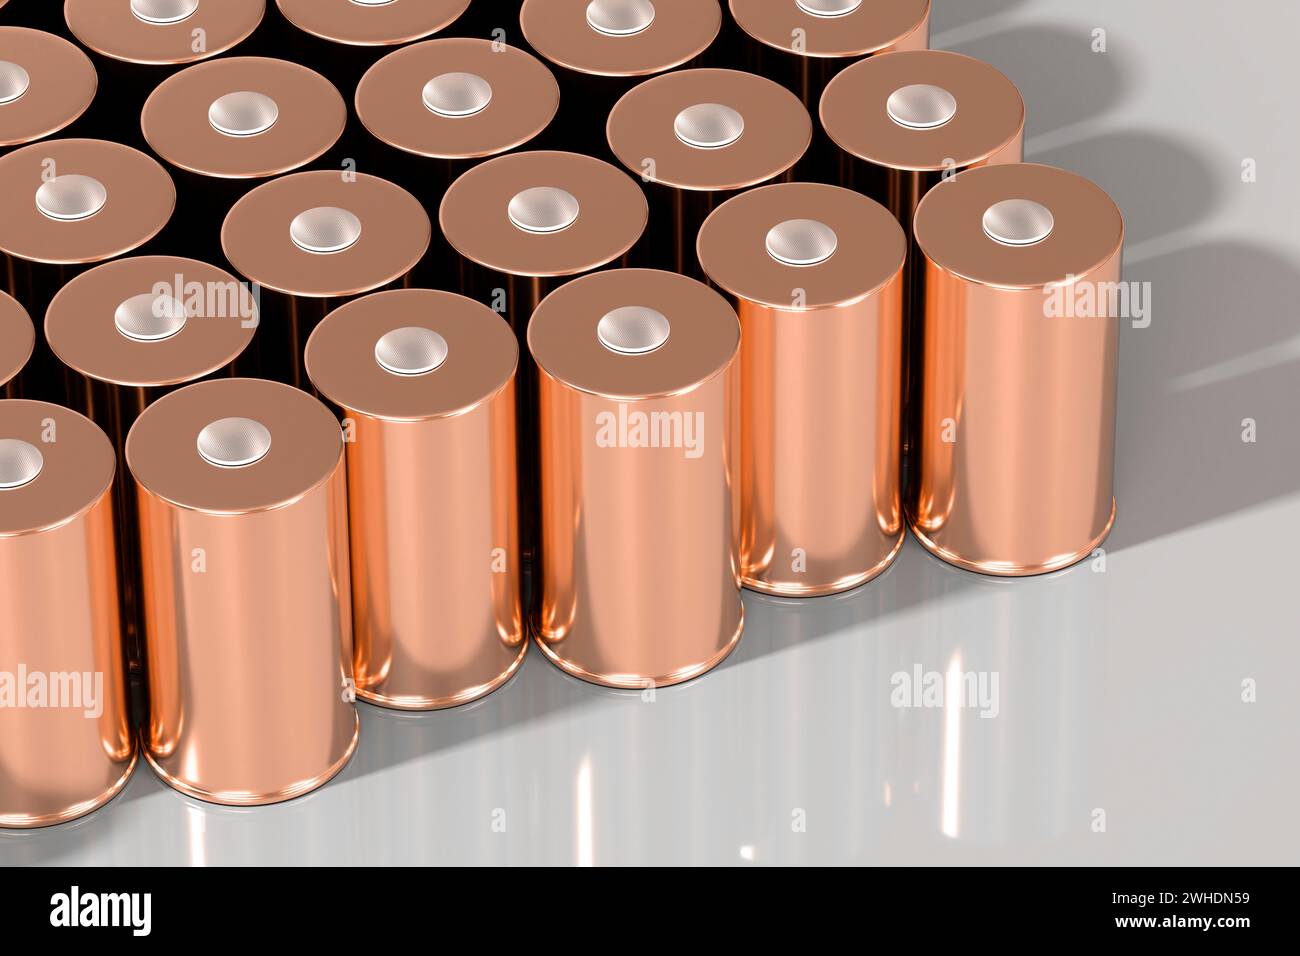 Batteria cilindrica al litio per trazione da 4680 pezzi per moduli, accumulatore cilindrico ad alta energia per veicoli elettrici o ibridi, Advan Foto Stock